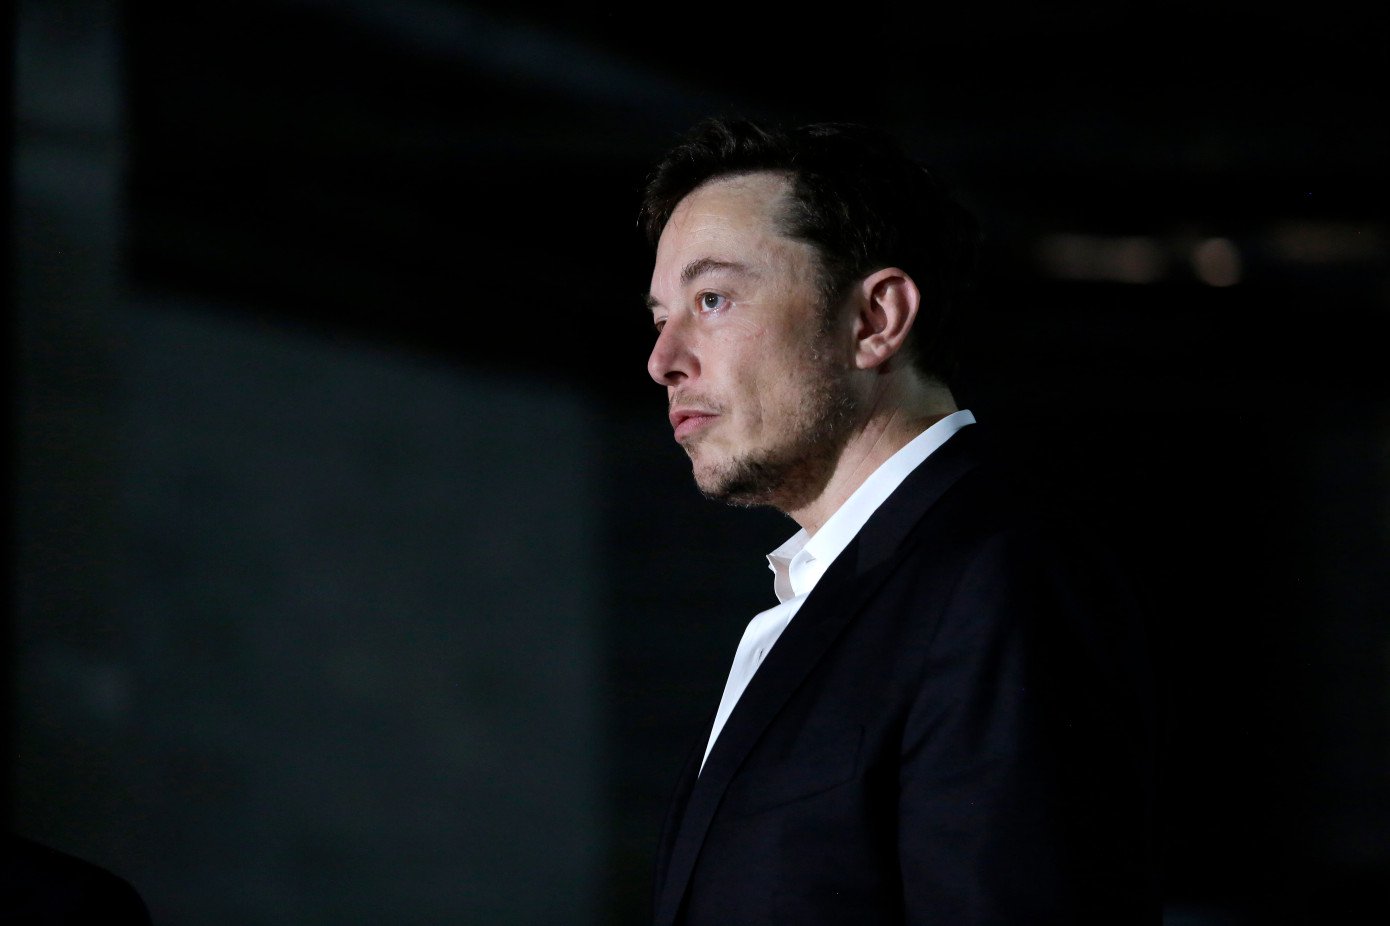 Ylon Musk tiré à la demande de la SEC. Tesla condamné à une amende de 20 millions de dollars